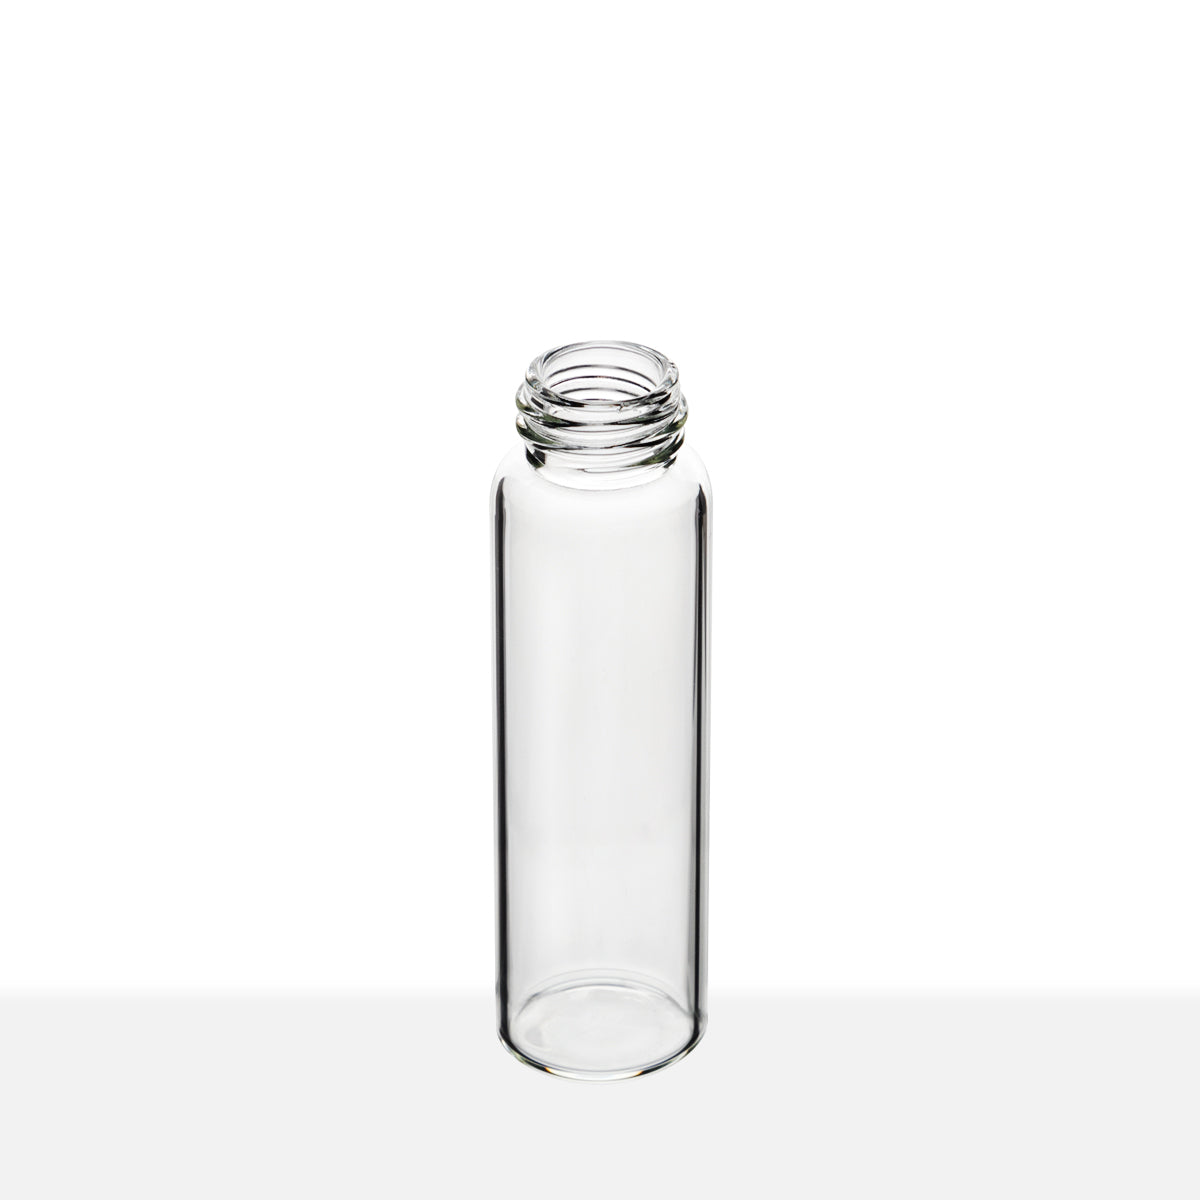 SCREW THREAD GLASS VIALS - CLEAR Item #:VC151965